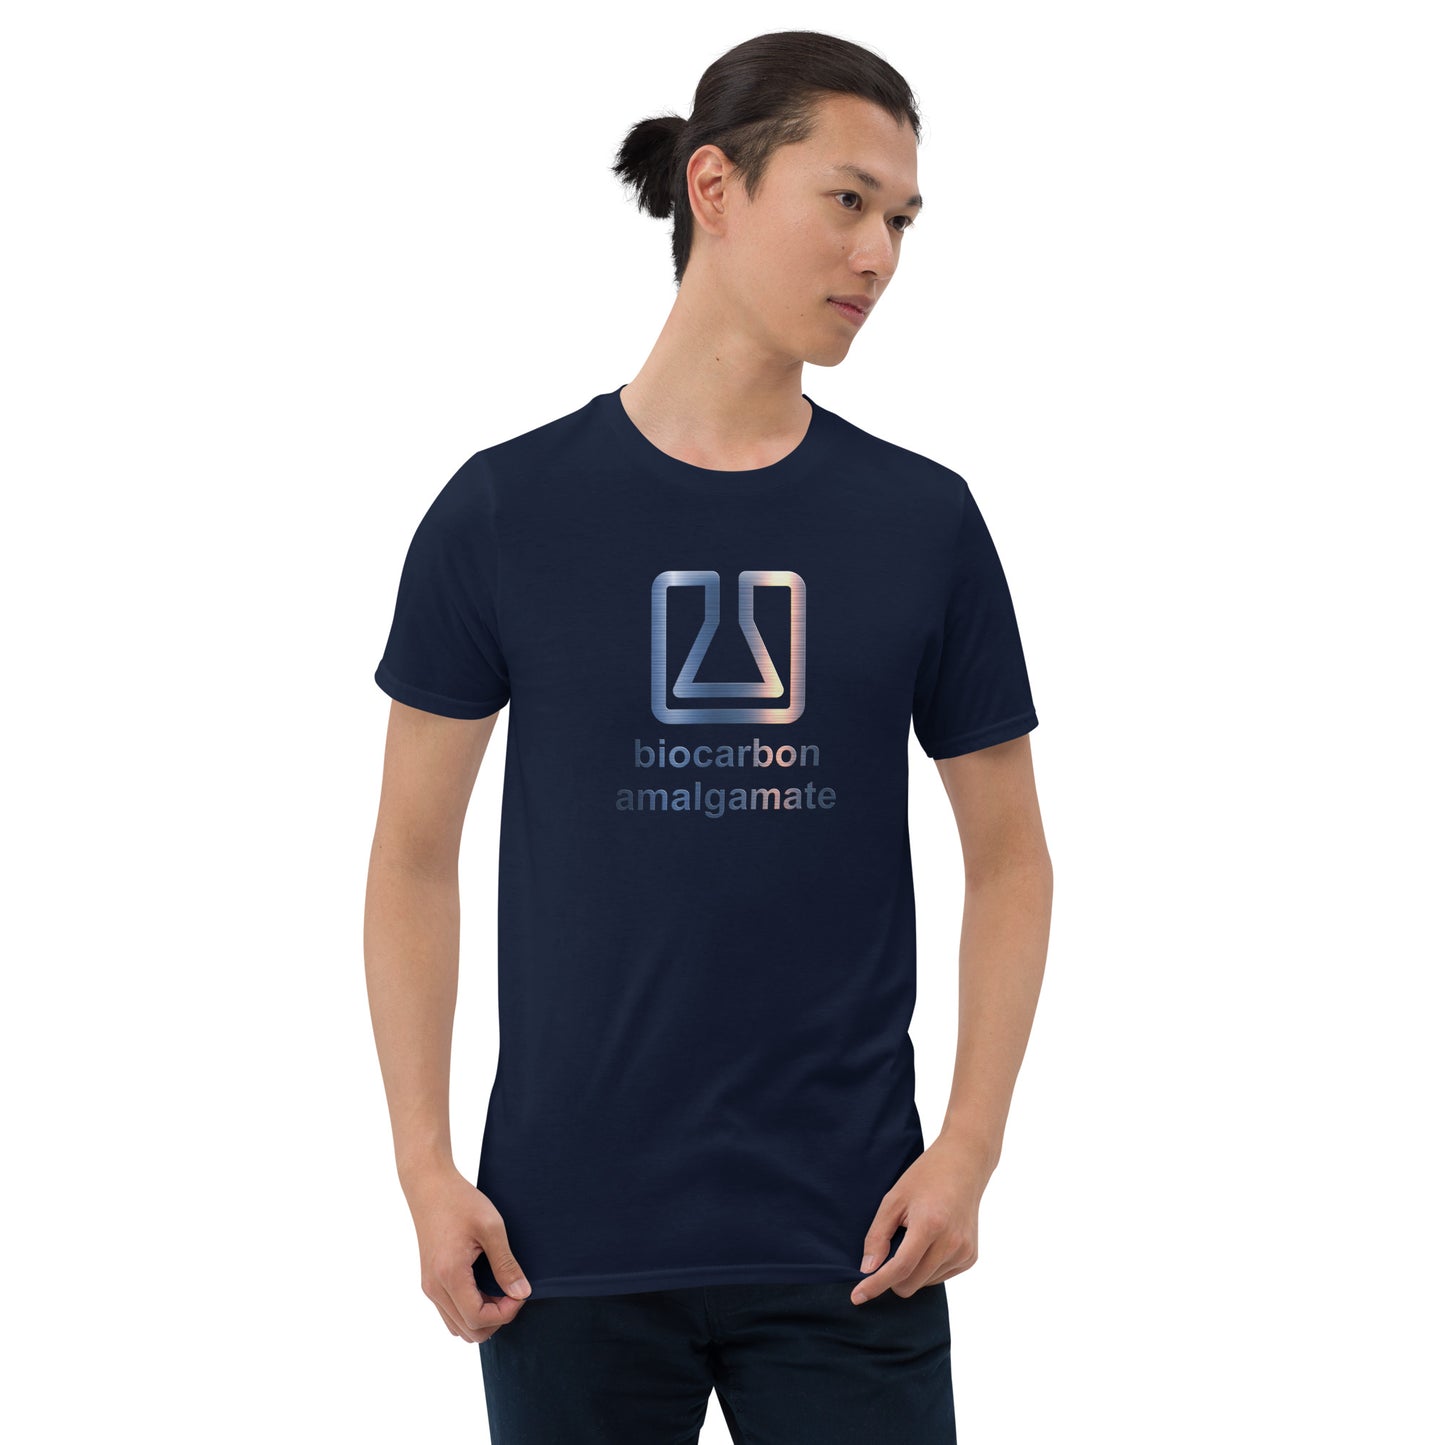 Biocarbon Amalgamate Short-Sleeve Unisex T-Shirt